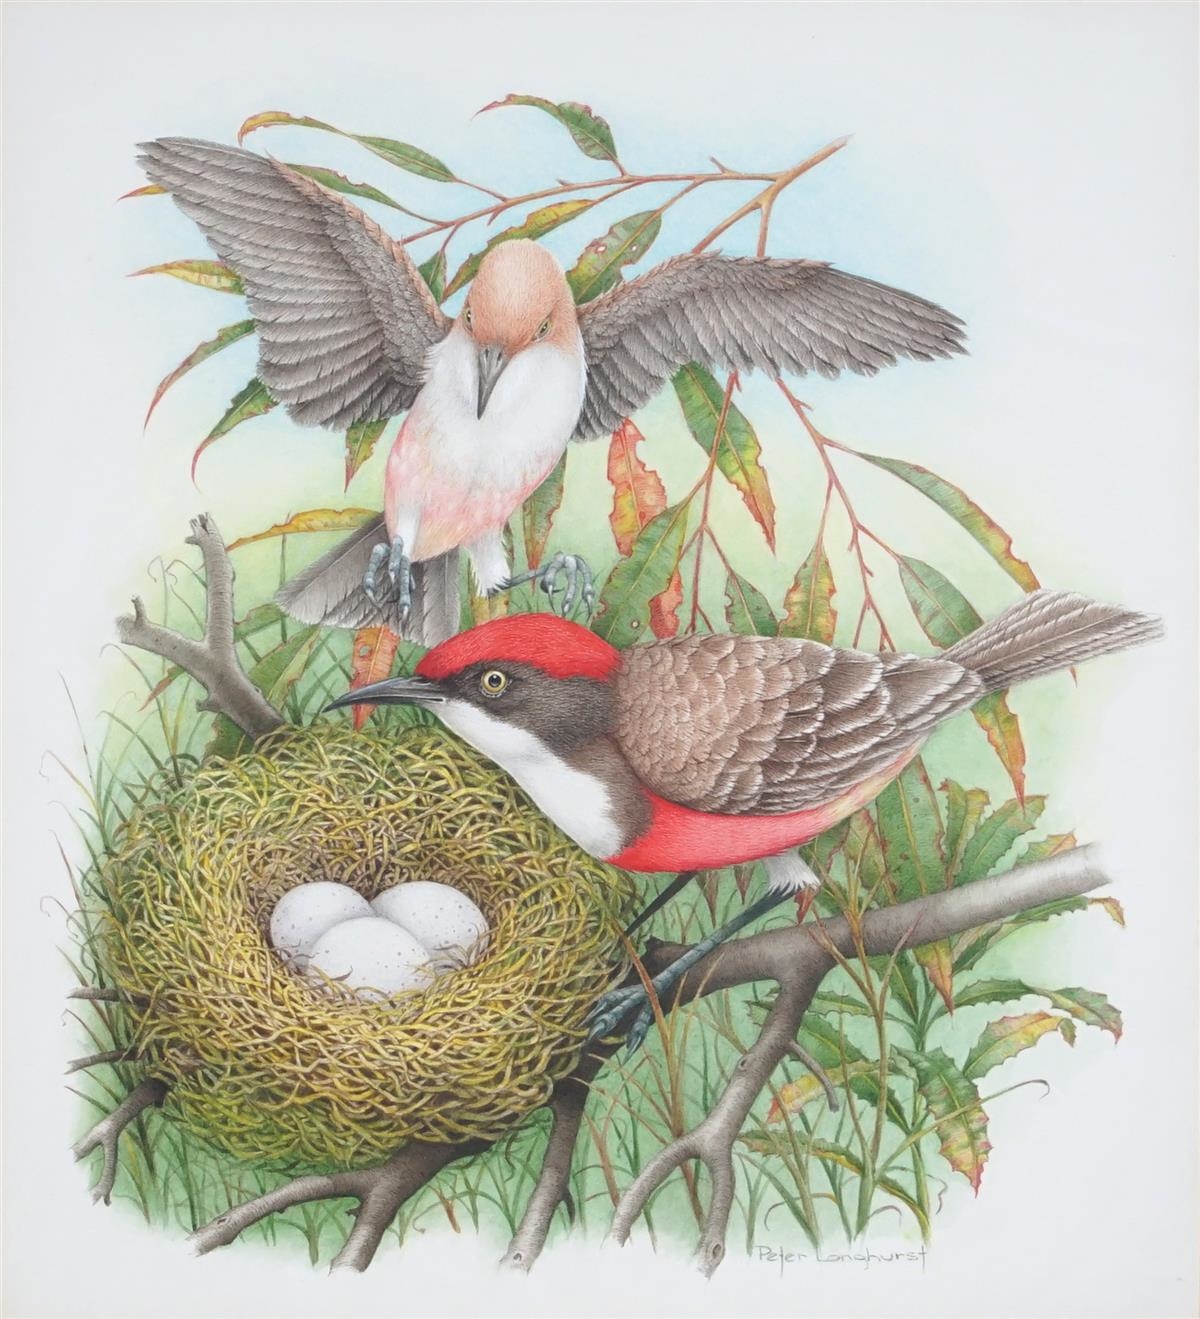 Artwork by Peter Longhurst, Crimson Char & Nest (Ephthianura Tricolor), Made of watercolour